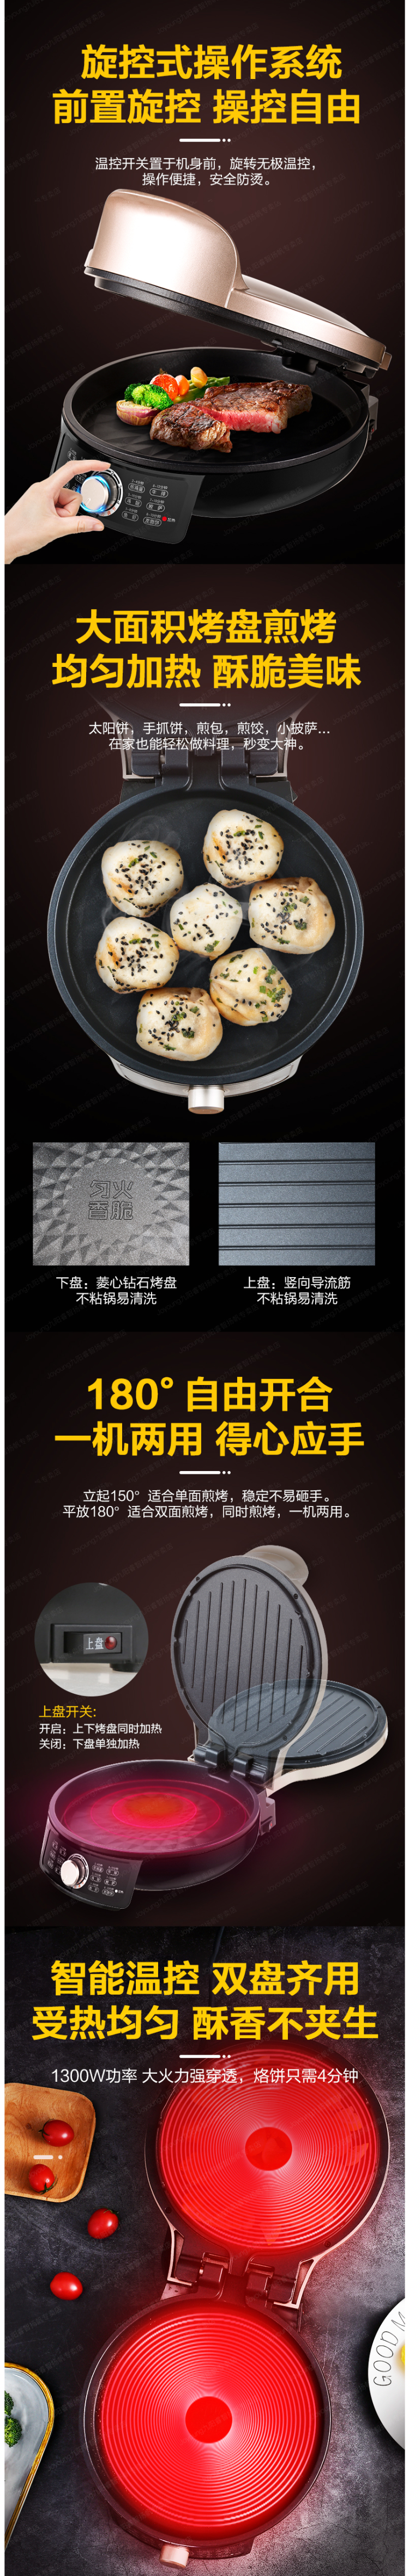 九阳 JK-30K09X 电饼铛 双面悬浮加热 独立调温 31cm钻纹烤盘 图5